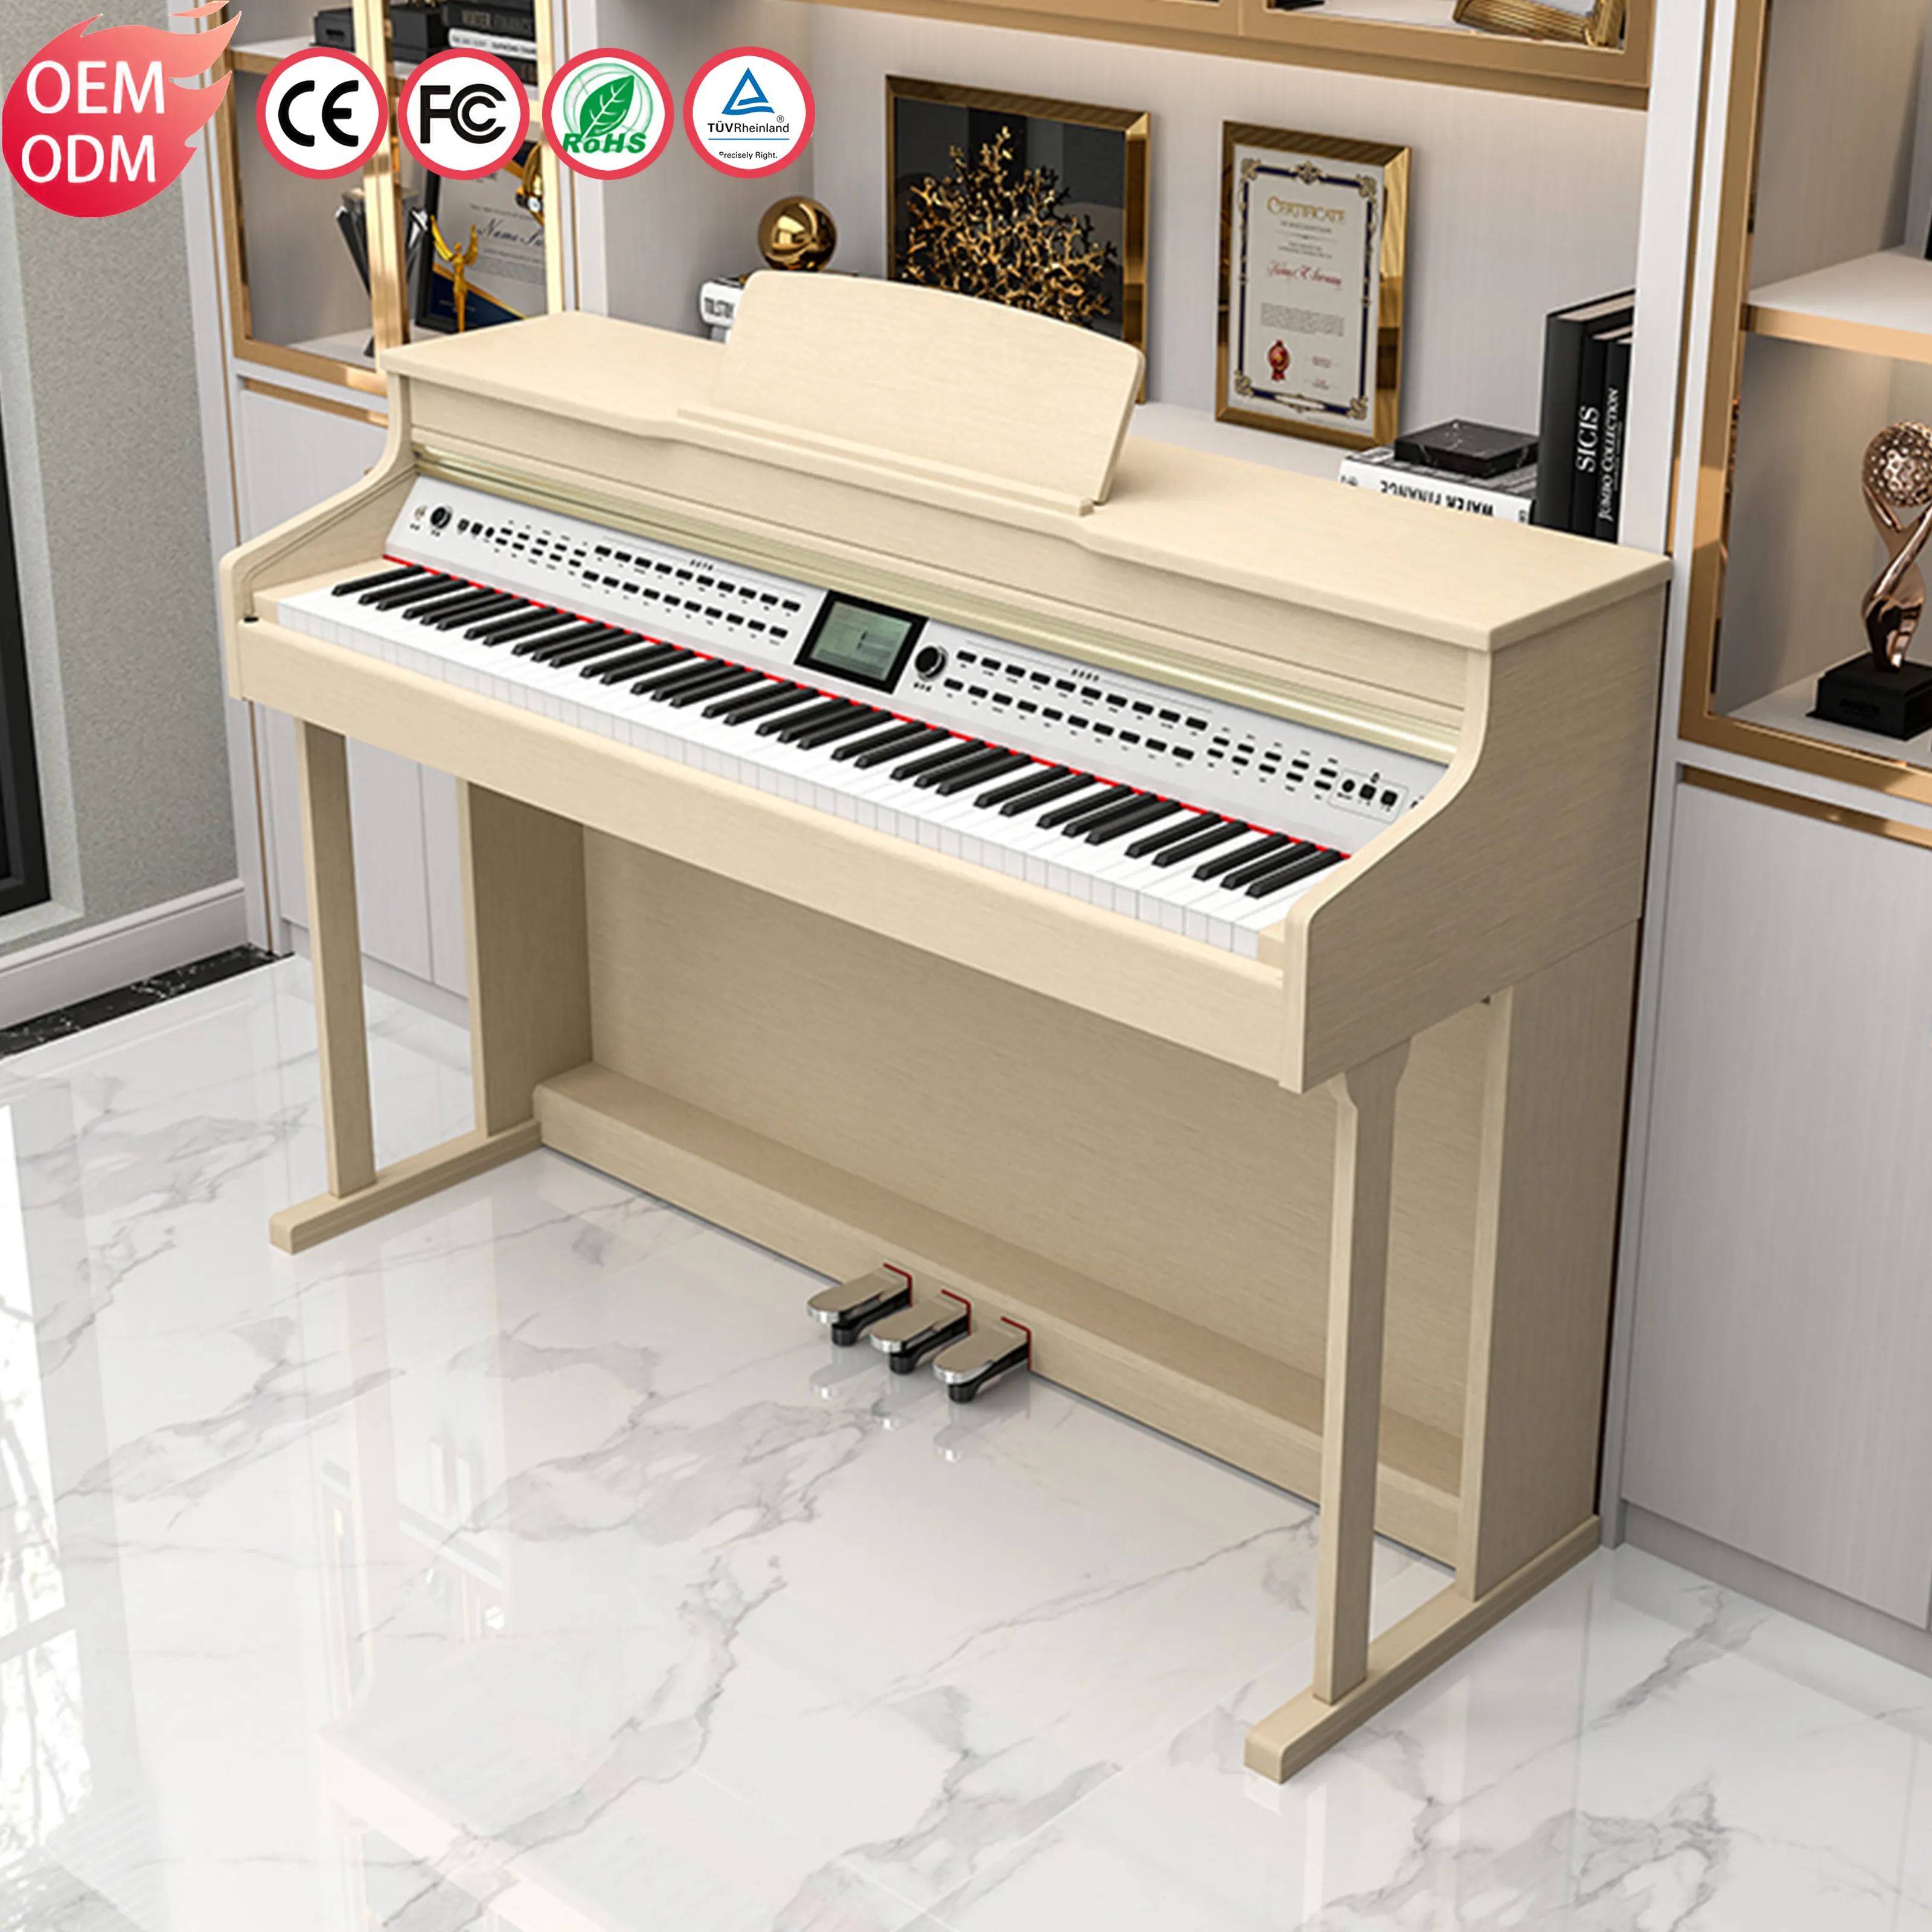 لوحة مفاتيح رقمية لل Piano قائمة من KIMFBAY لوحة مفاتيح بيانو كلاسيكي لوحة مفاتيح بيانو للمحترفين